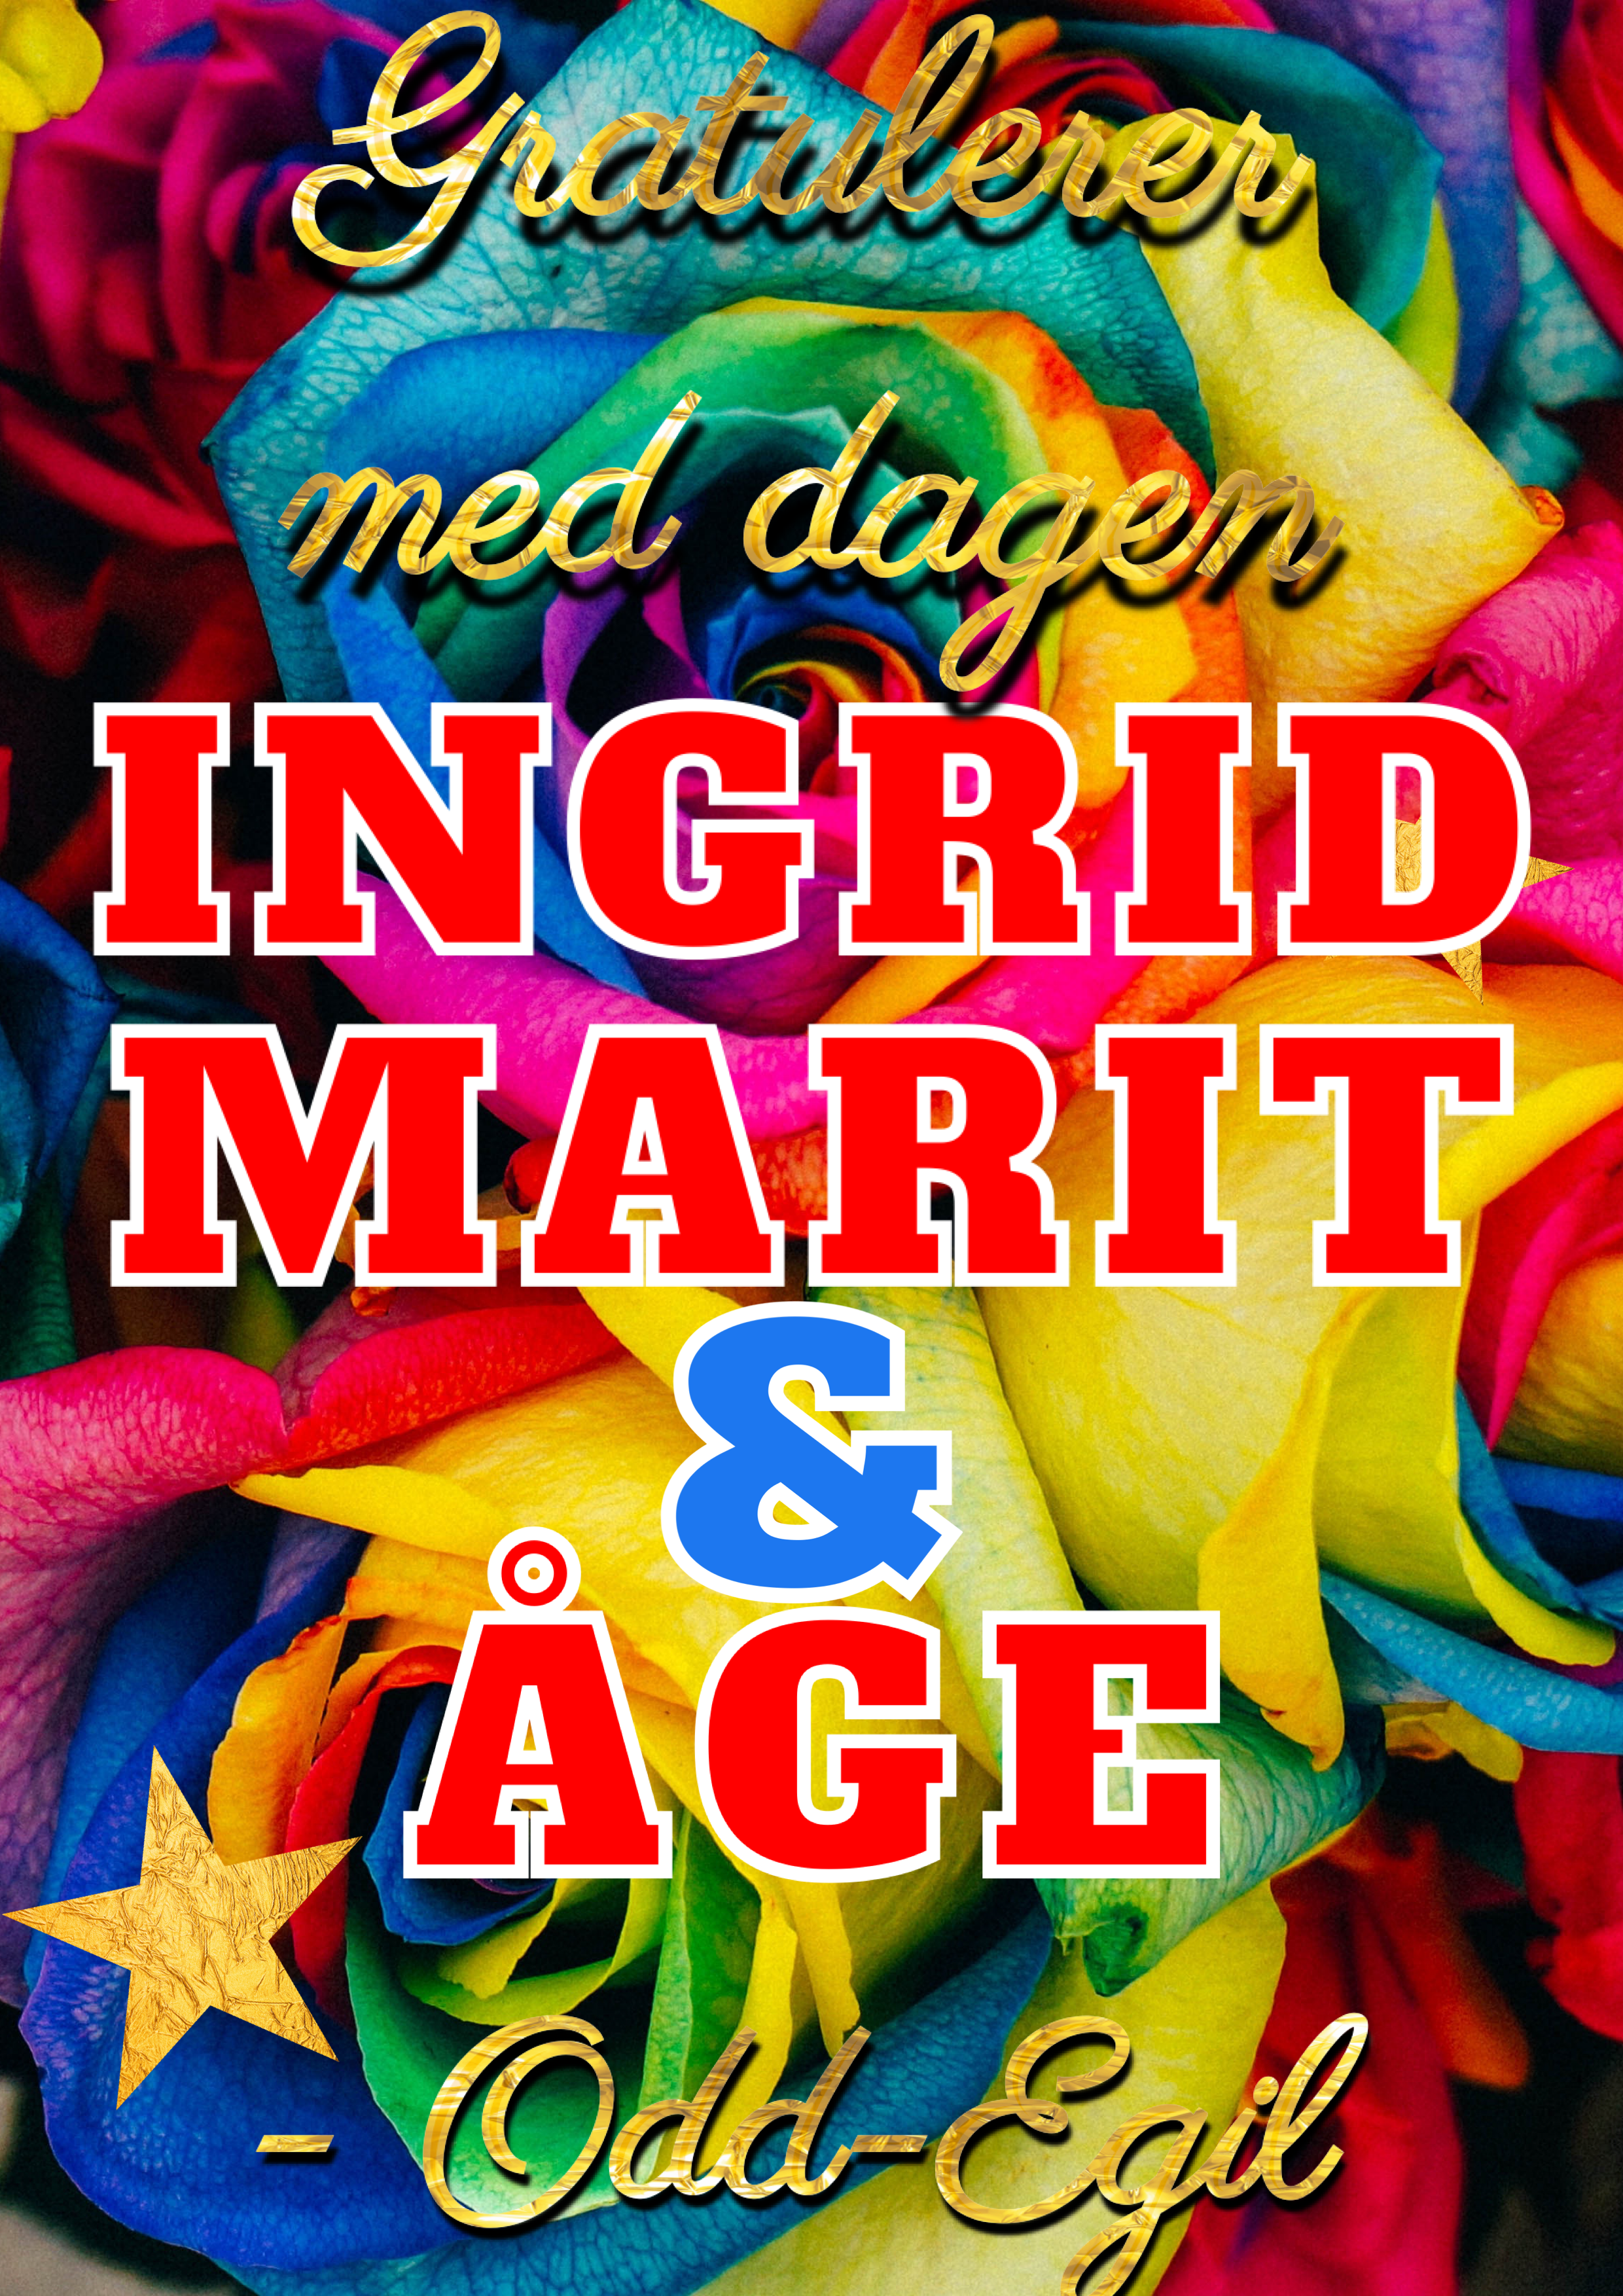 Gratulerer med dagen Marit (Bjørgen), Ingrid (Kristiansen) & Åge (Alexandersen), Hilsen Odd-Egil.